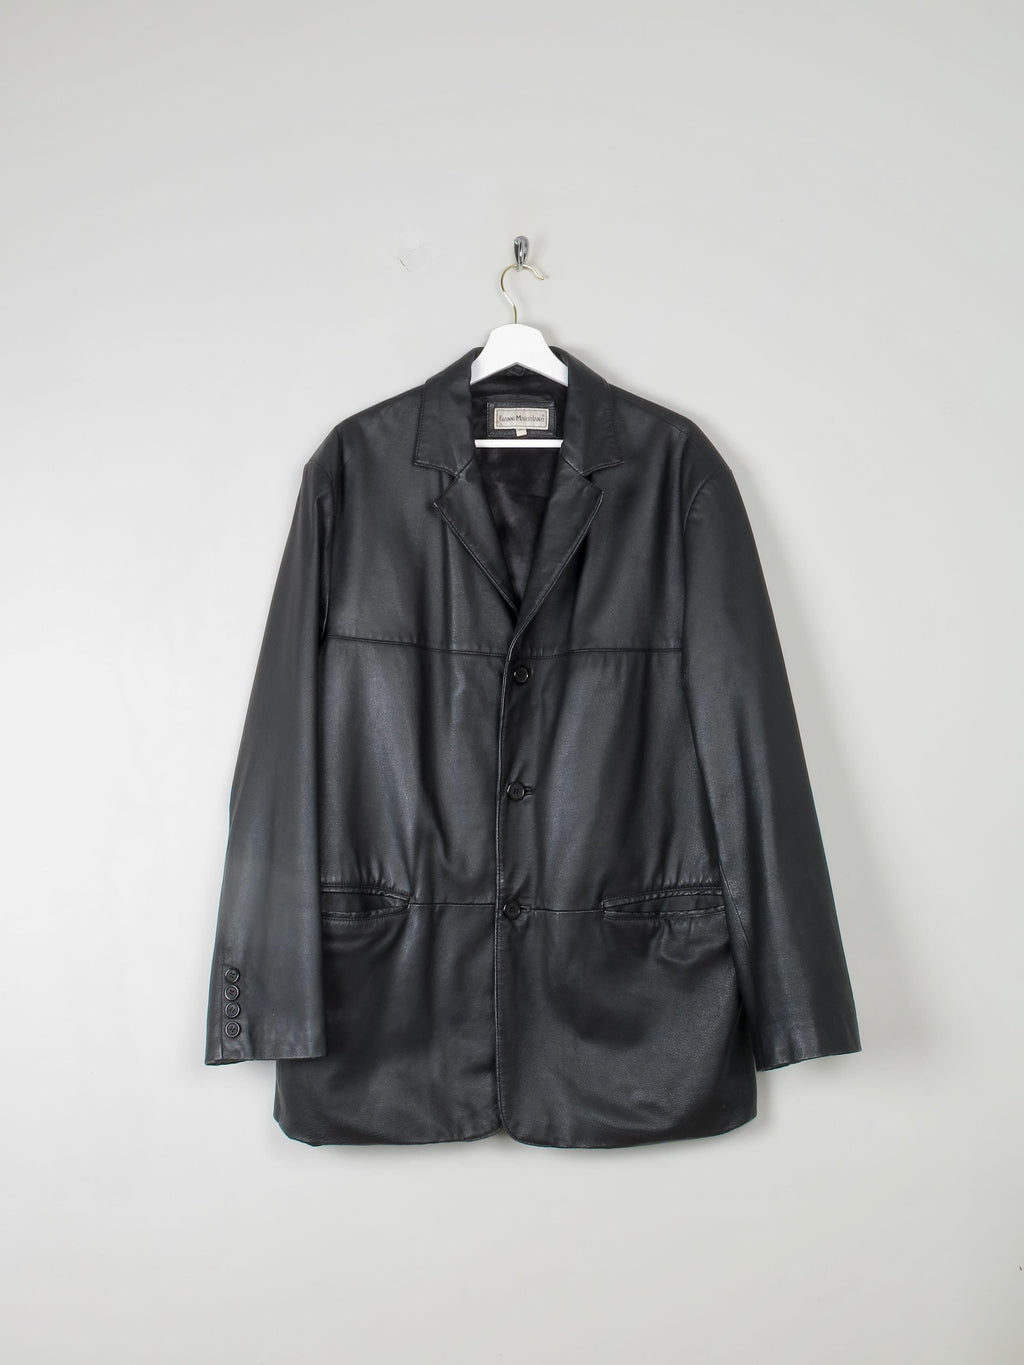 Men's Black Vintage Leather Jacket Oversized  M/L - The Harlequin